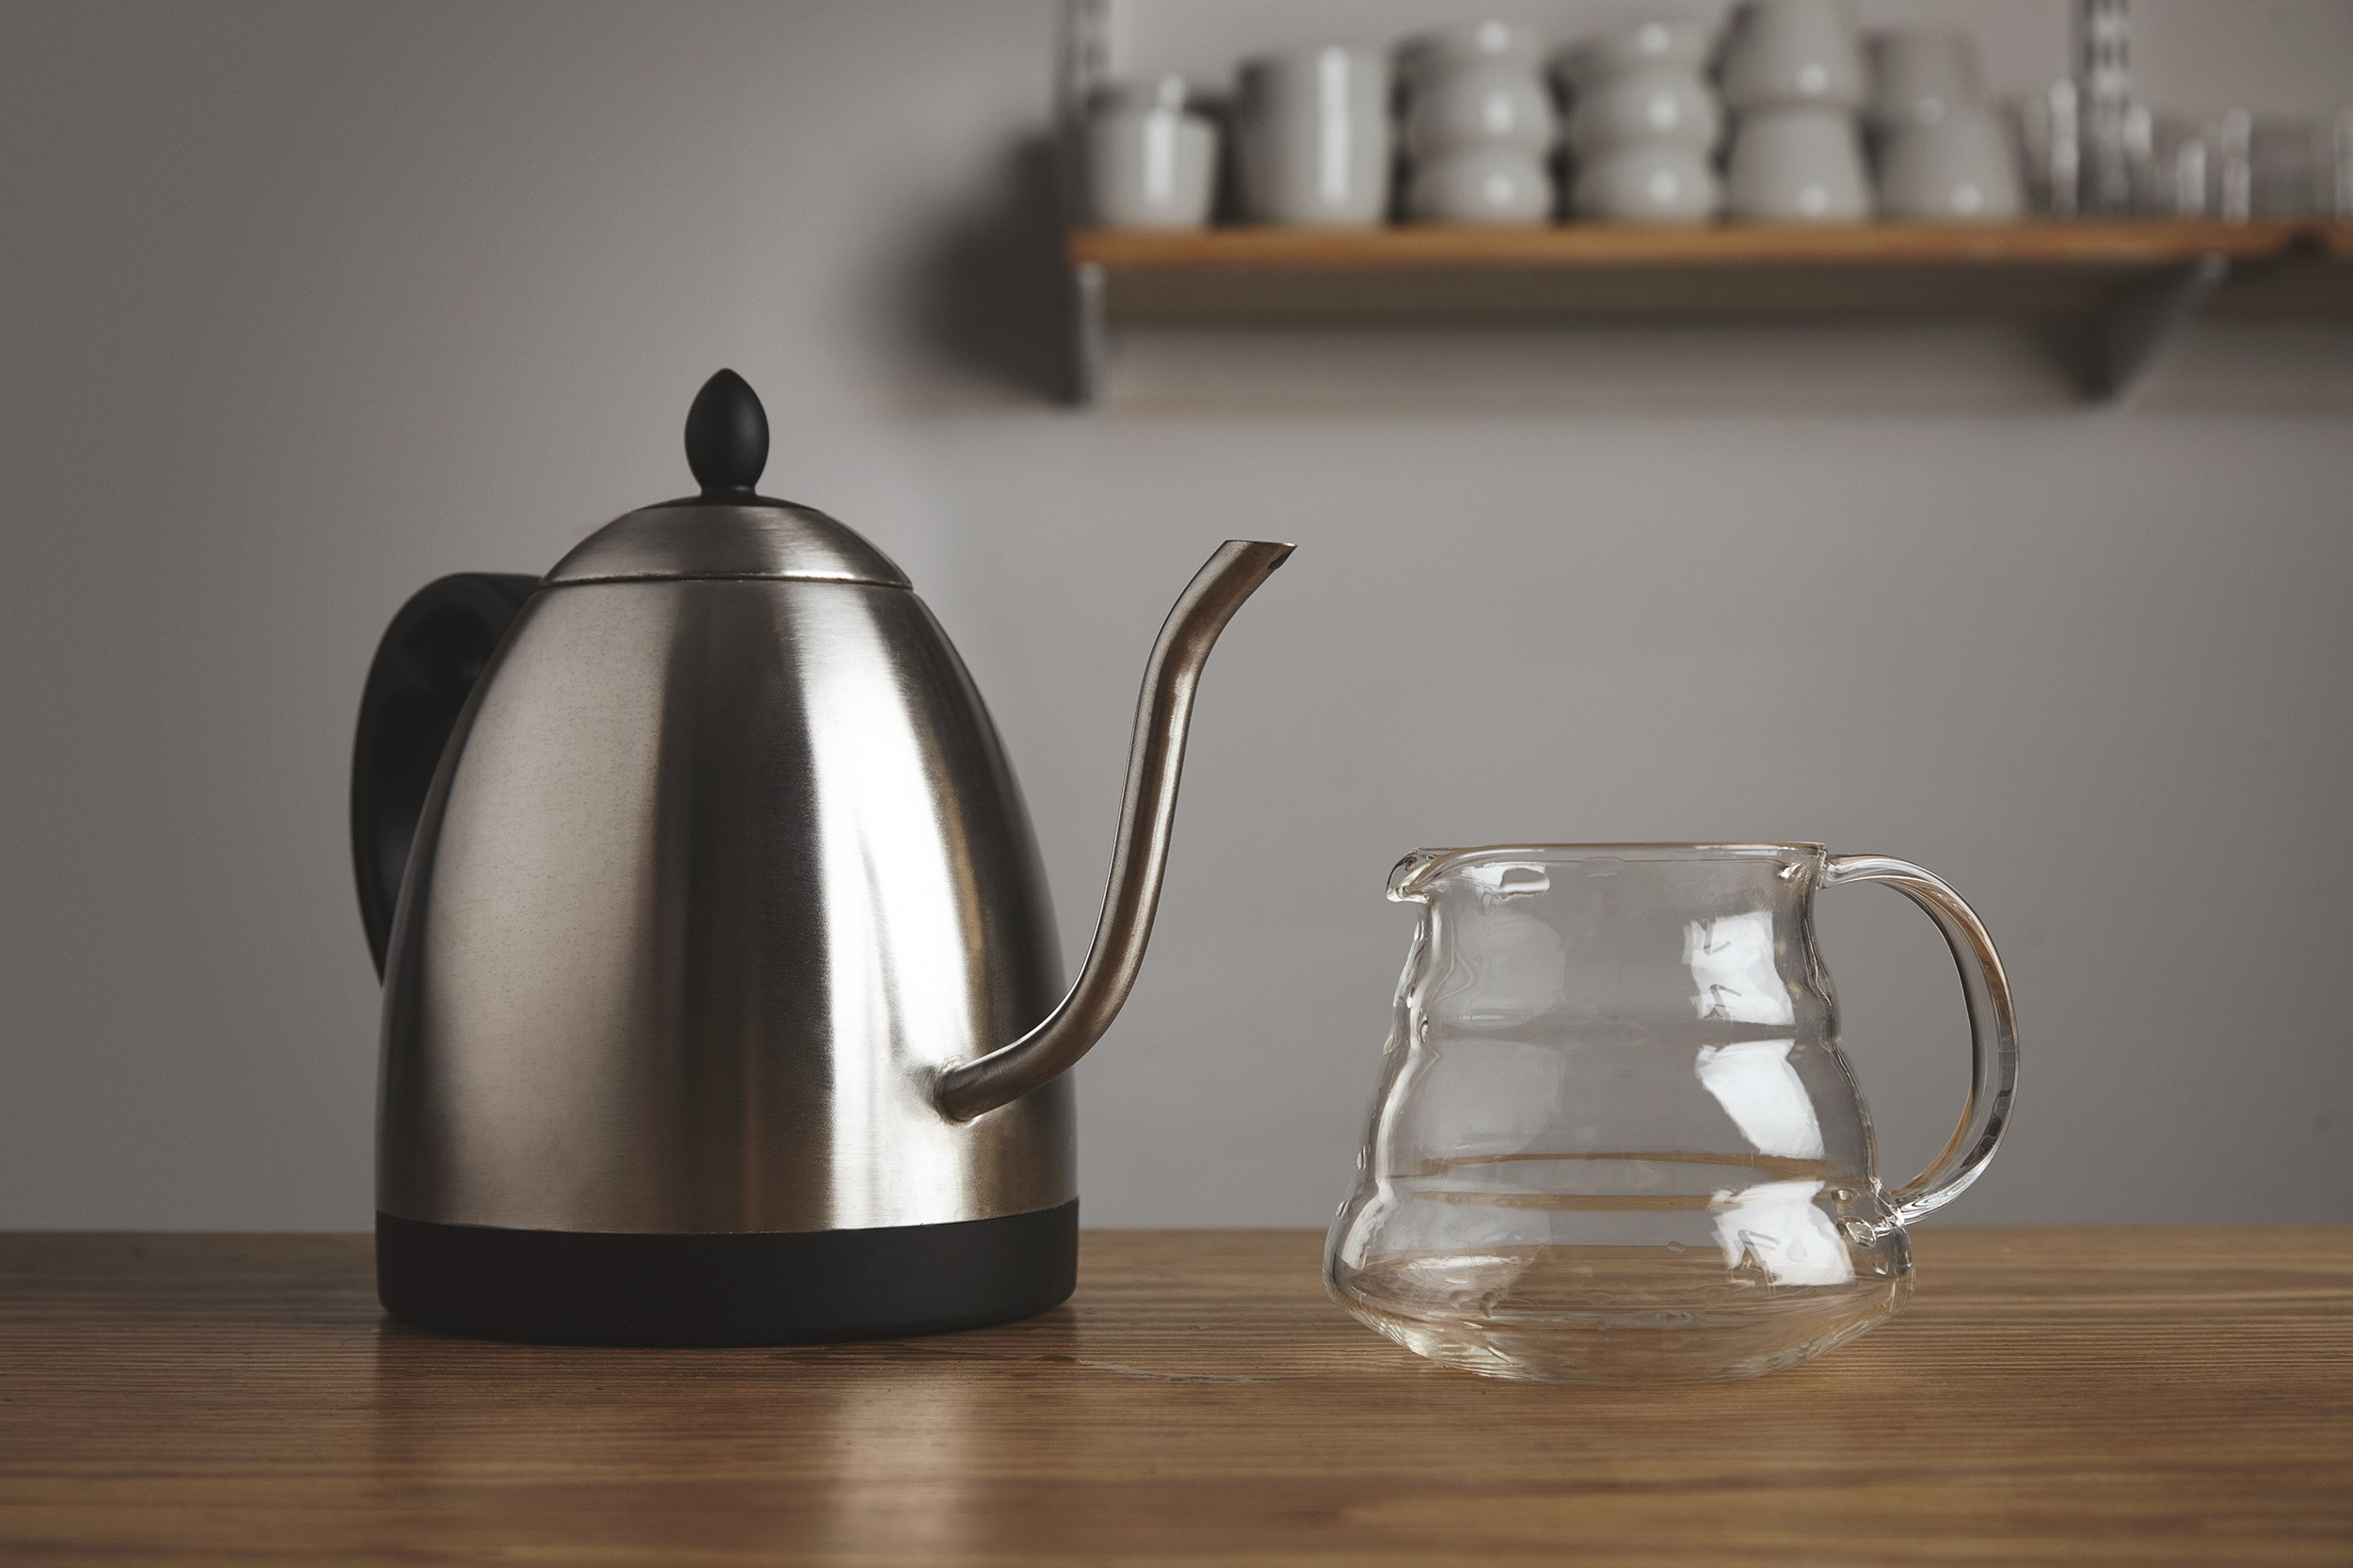 Как почистить чайник и убрать накипь в домашних условиях